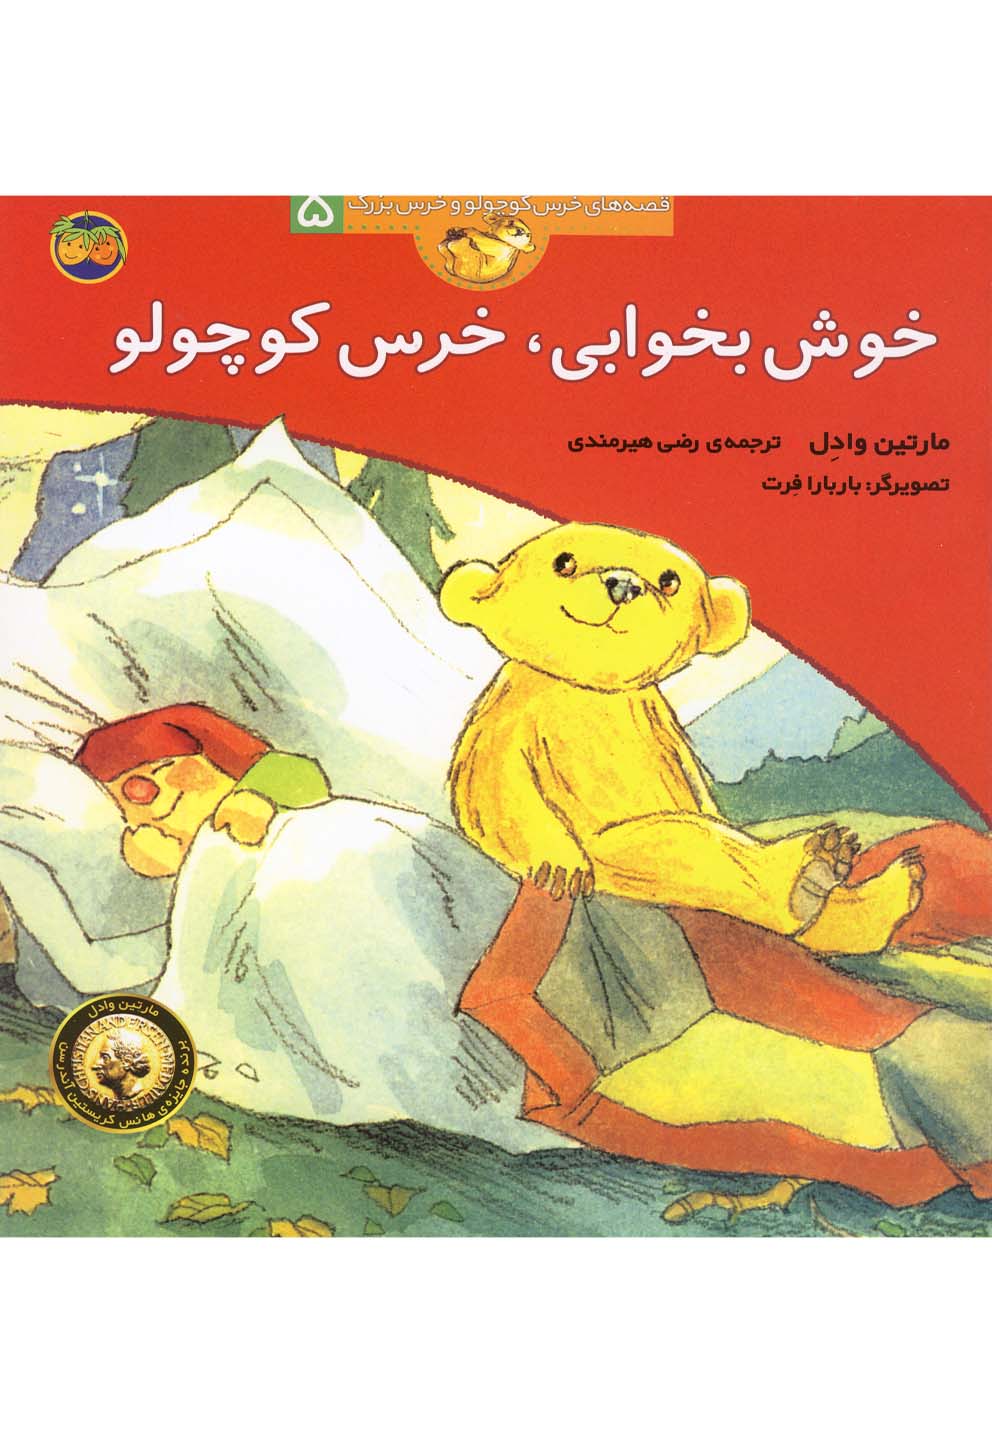 قصه های خرس کوچولو و خرس بزرگ 5: خوش بخوابی خرس کوچولو